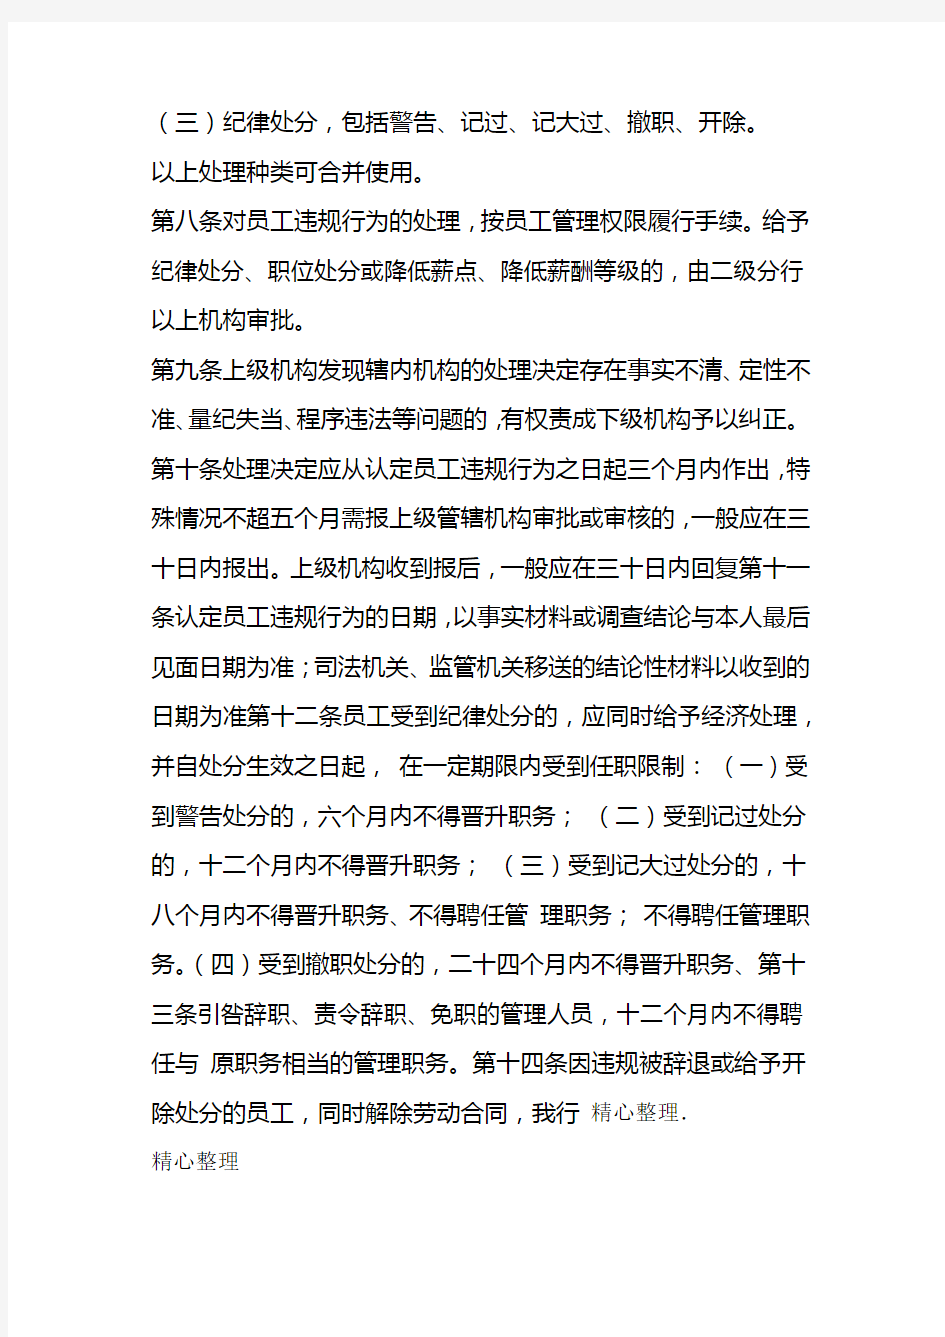 中国银行股份公司员工违规行为处理办法版